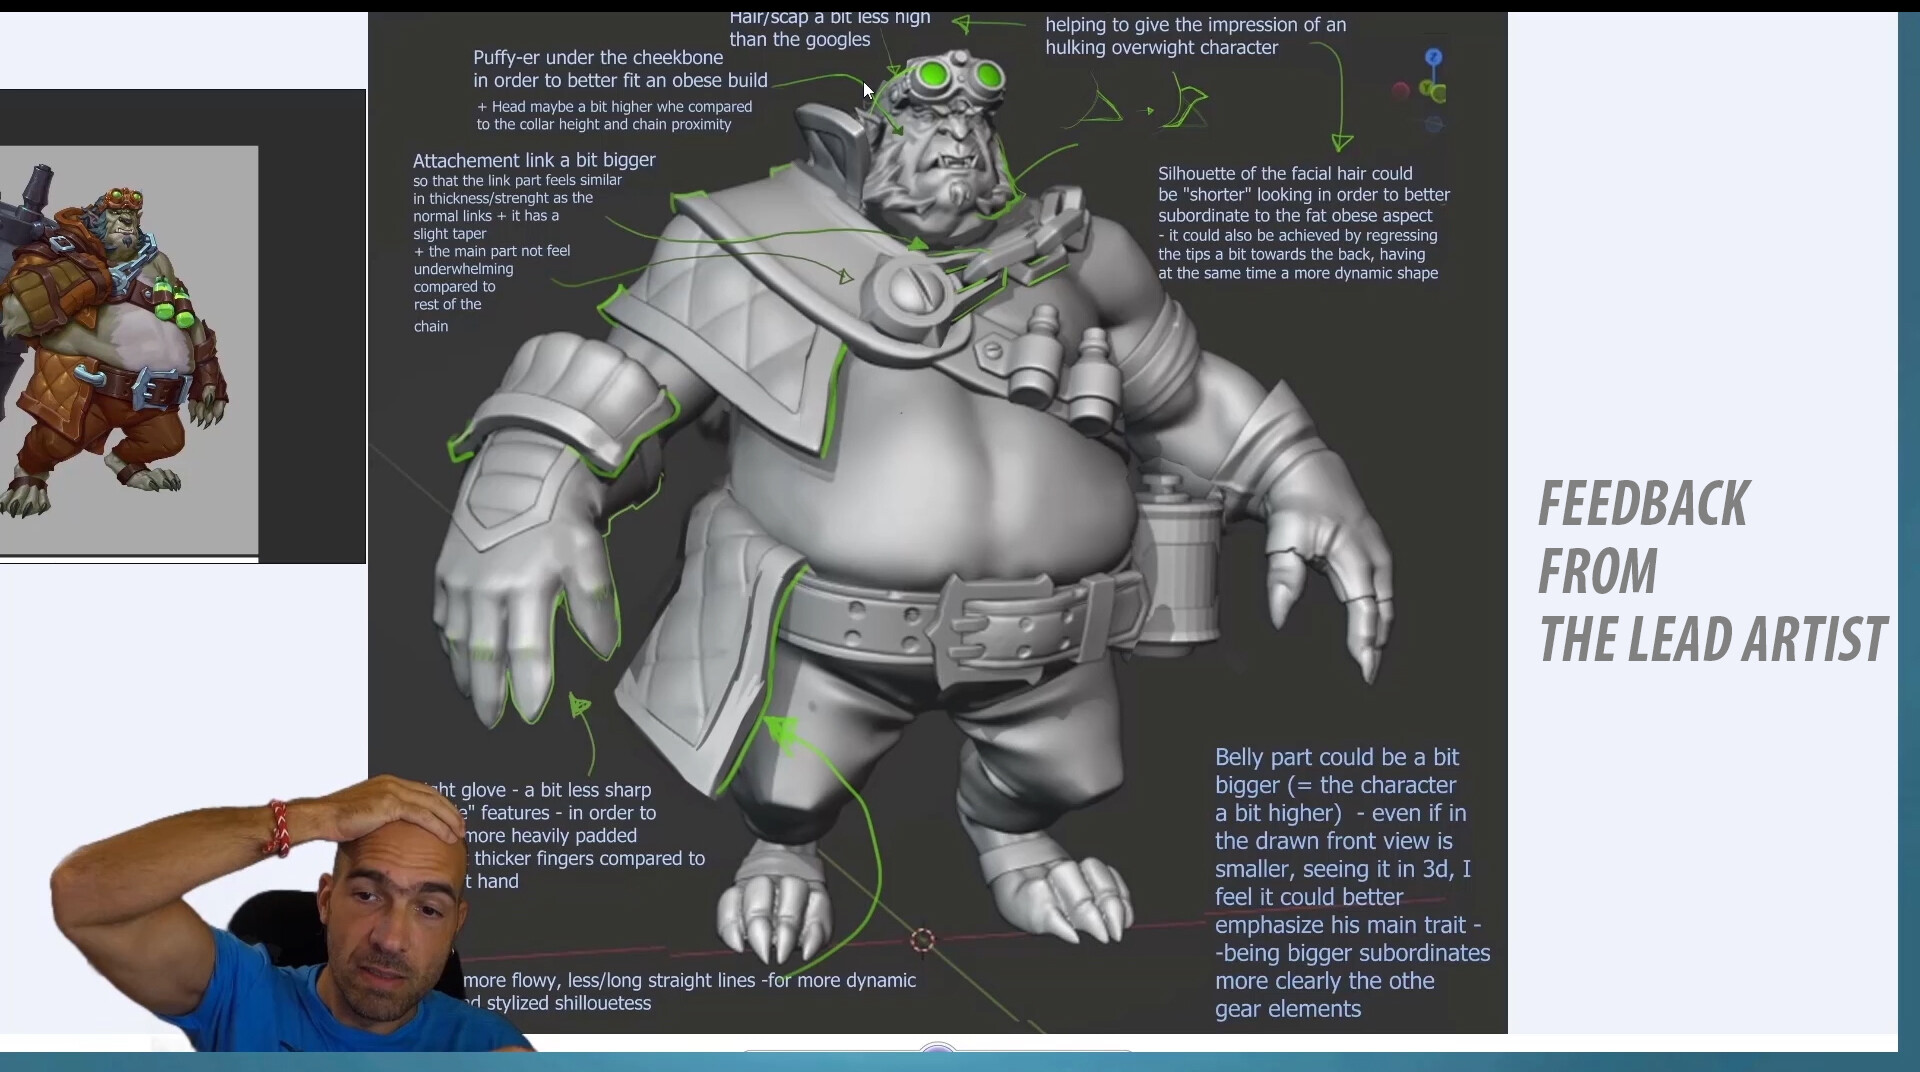 [NIkolay Naydenov系列]在Blender完整课程中创建商业 3D 游戏角色[中英字幕]